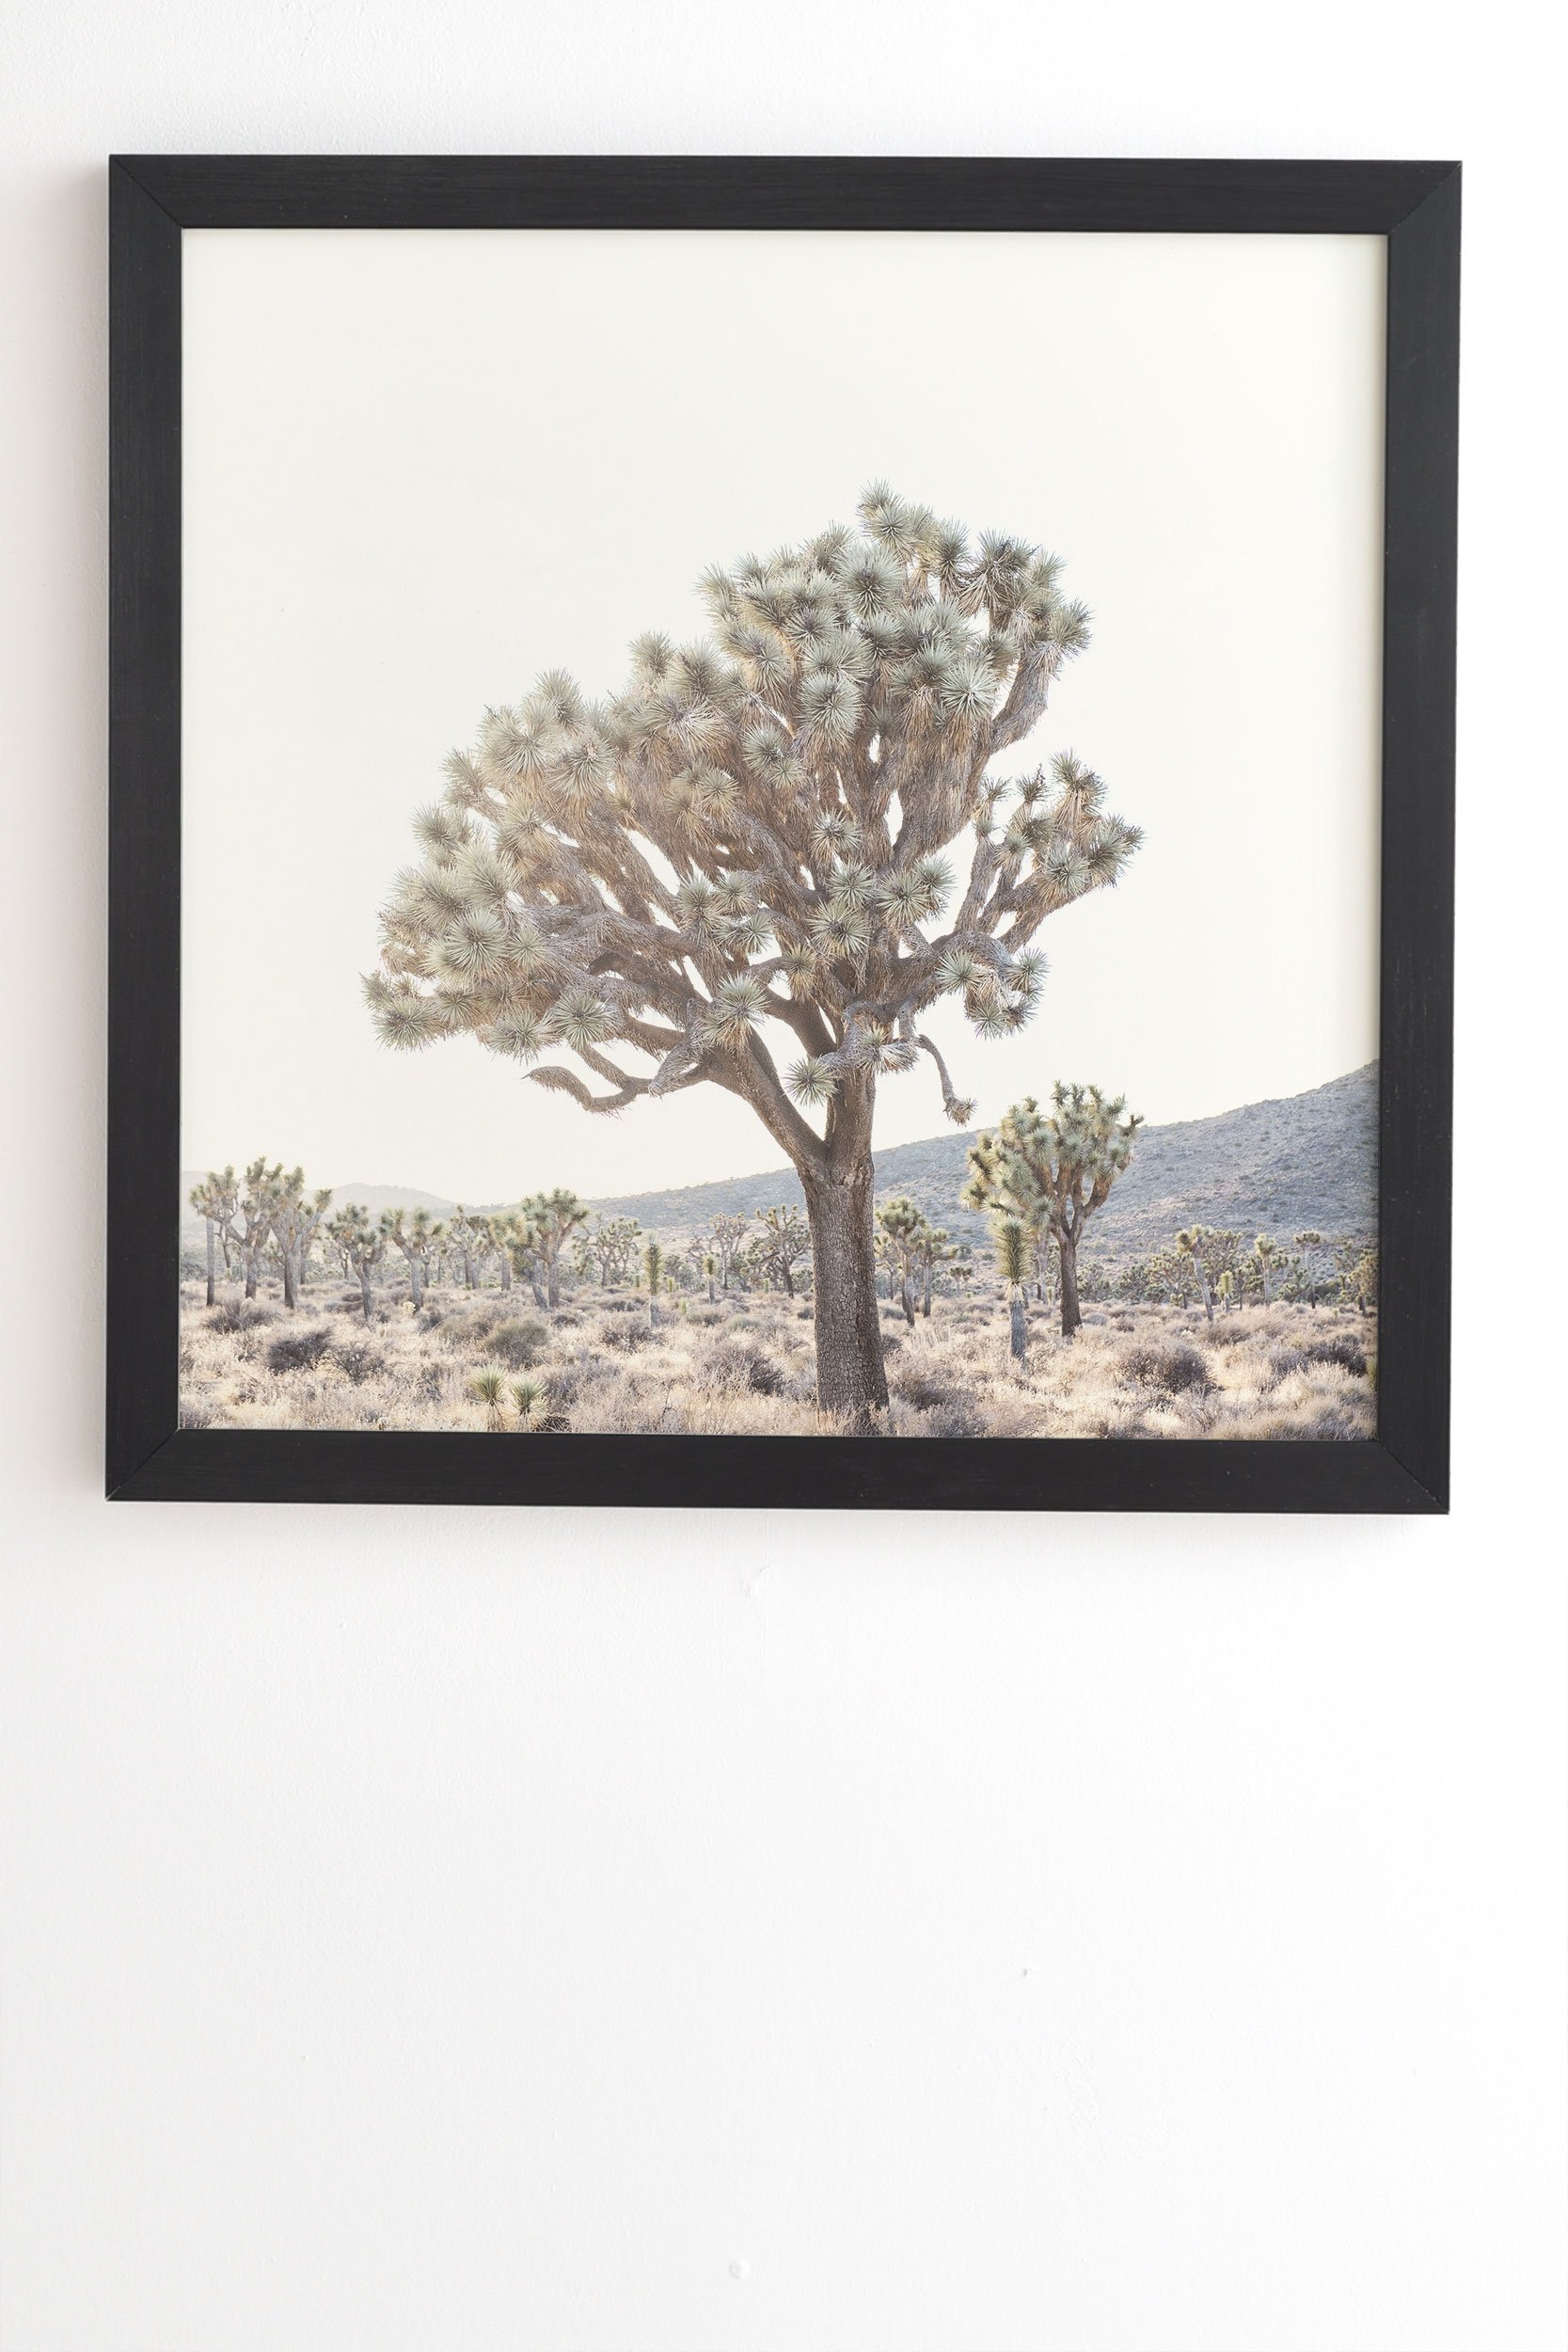 Bree Madden Desert Light Black Framed Wall Art - 30" x 30" - Image 1